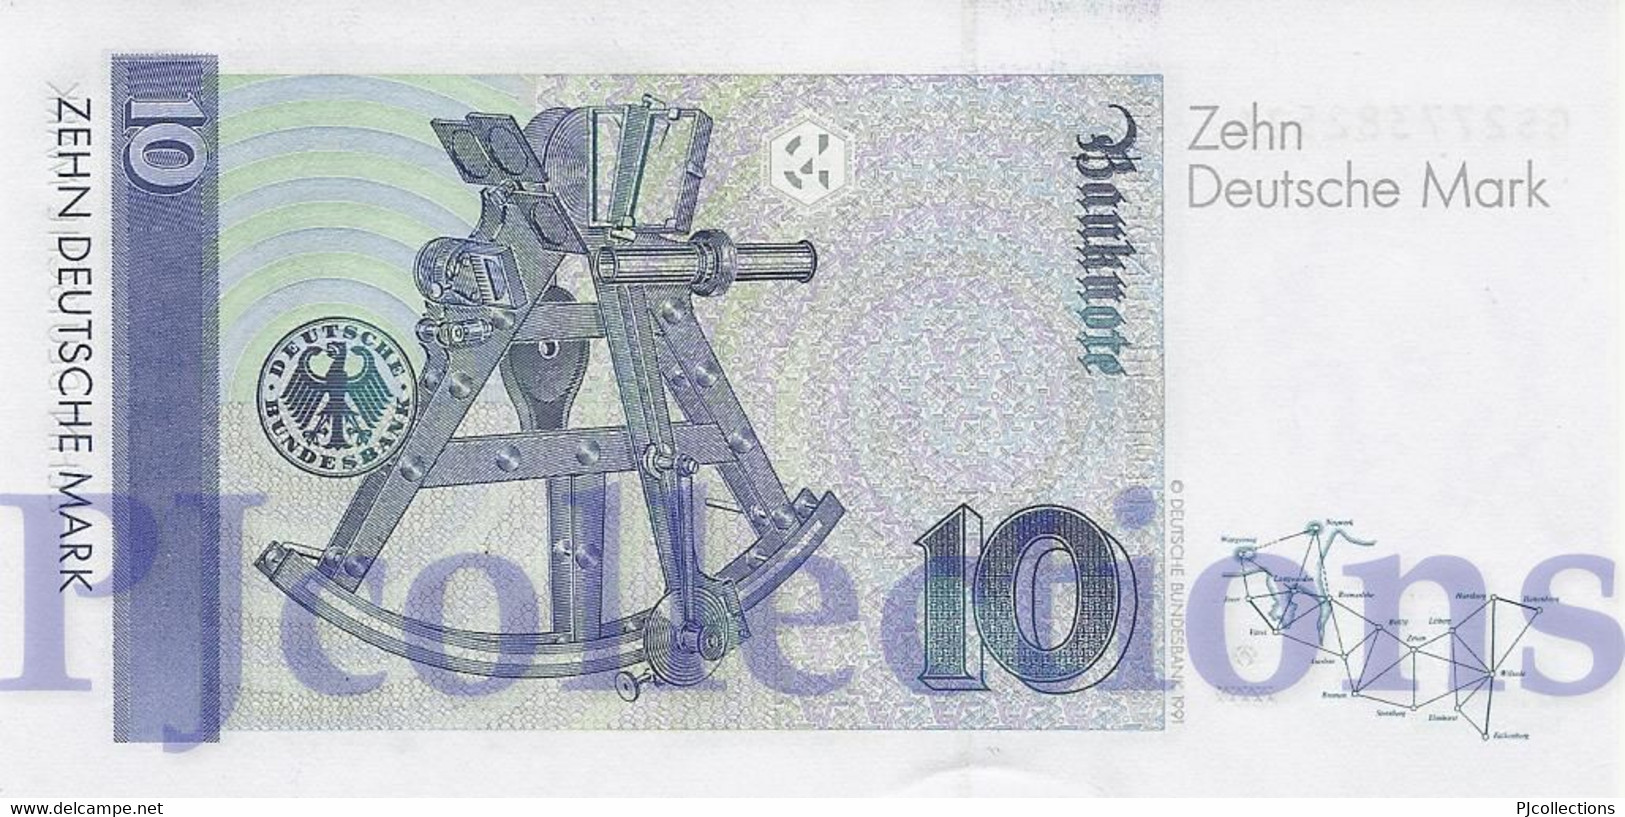 GERMANY FEDERAL REPUBLIC 10 DEUTSCHEMARK 1993 PICK 38c UNC - 10 Deutsche Mark